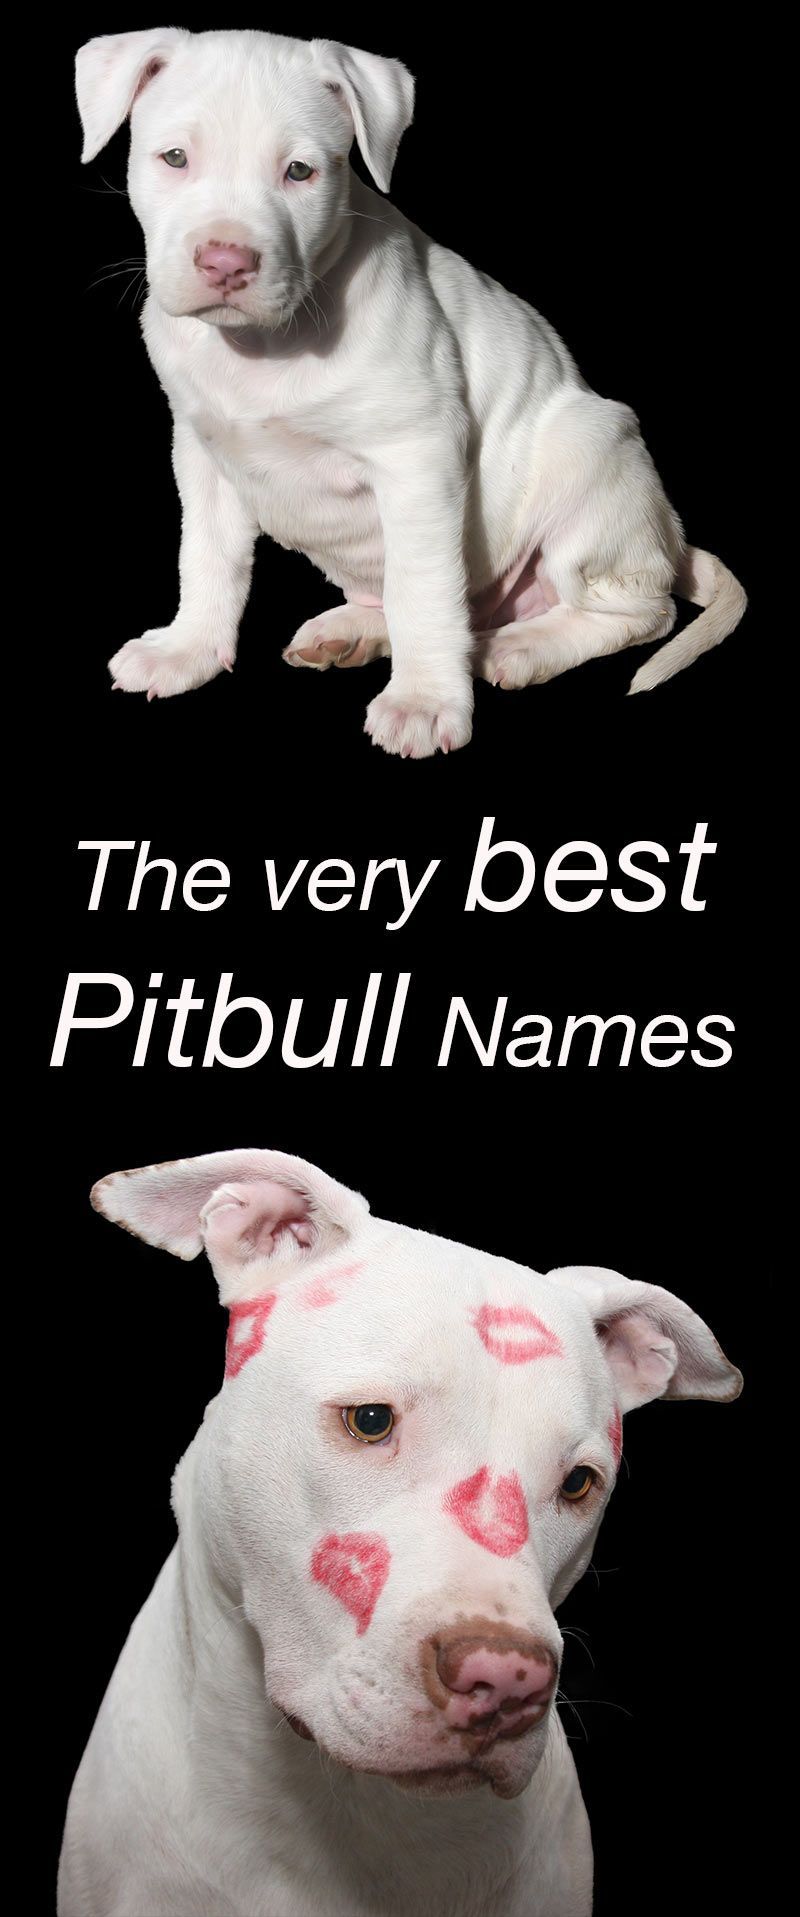 Најбоља Питбулл имена за вашег новог штенета